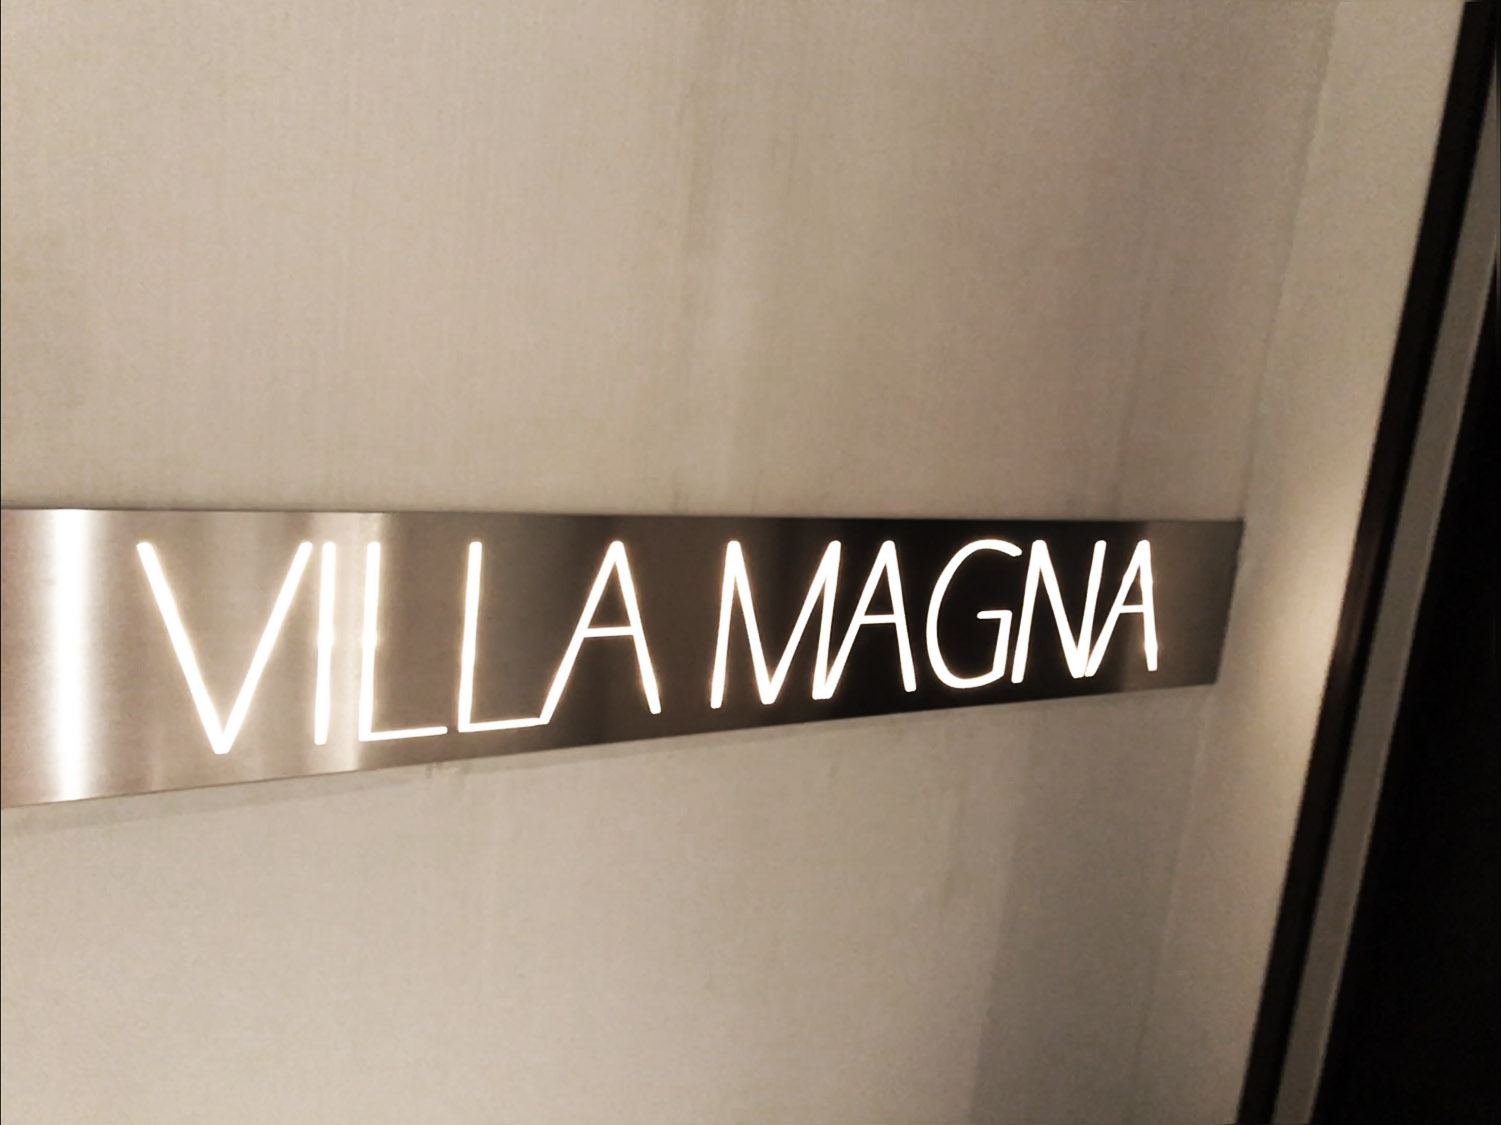 Villa Magna hotel sign in restaurant